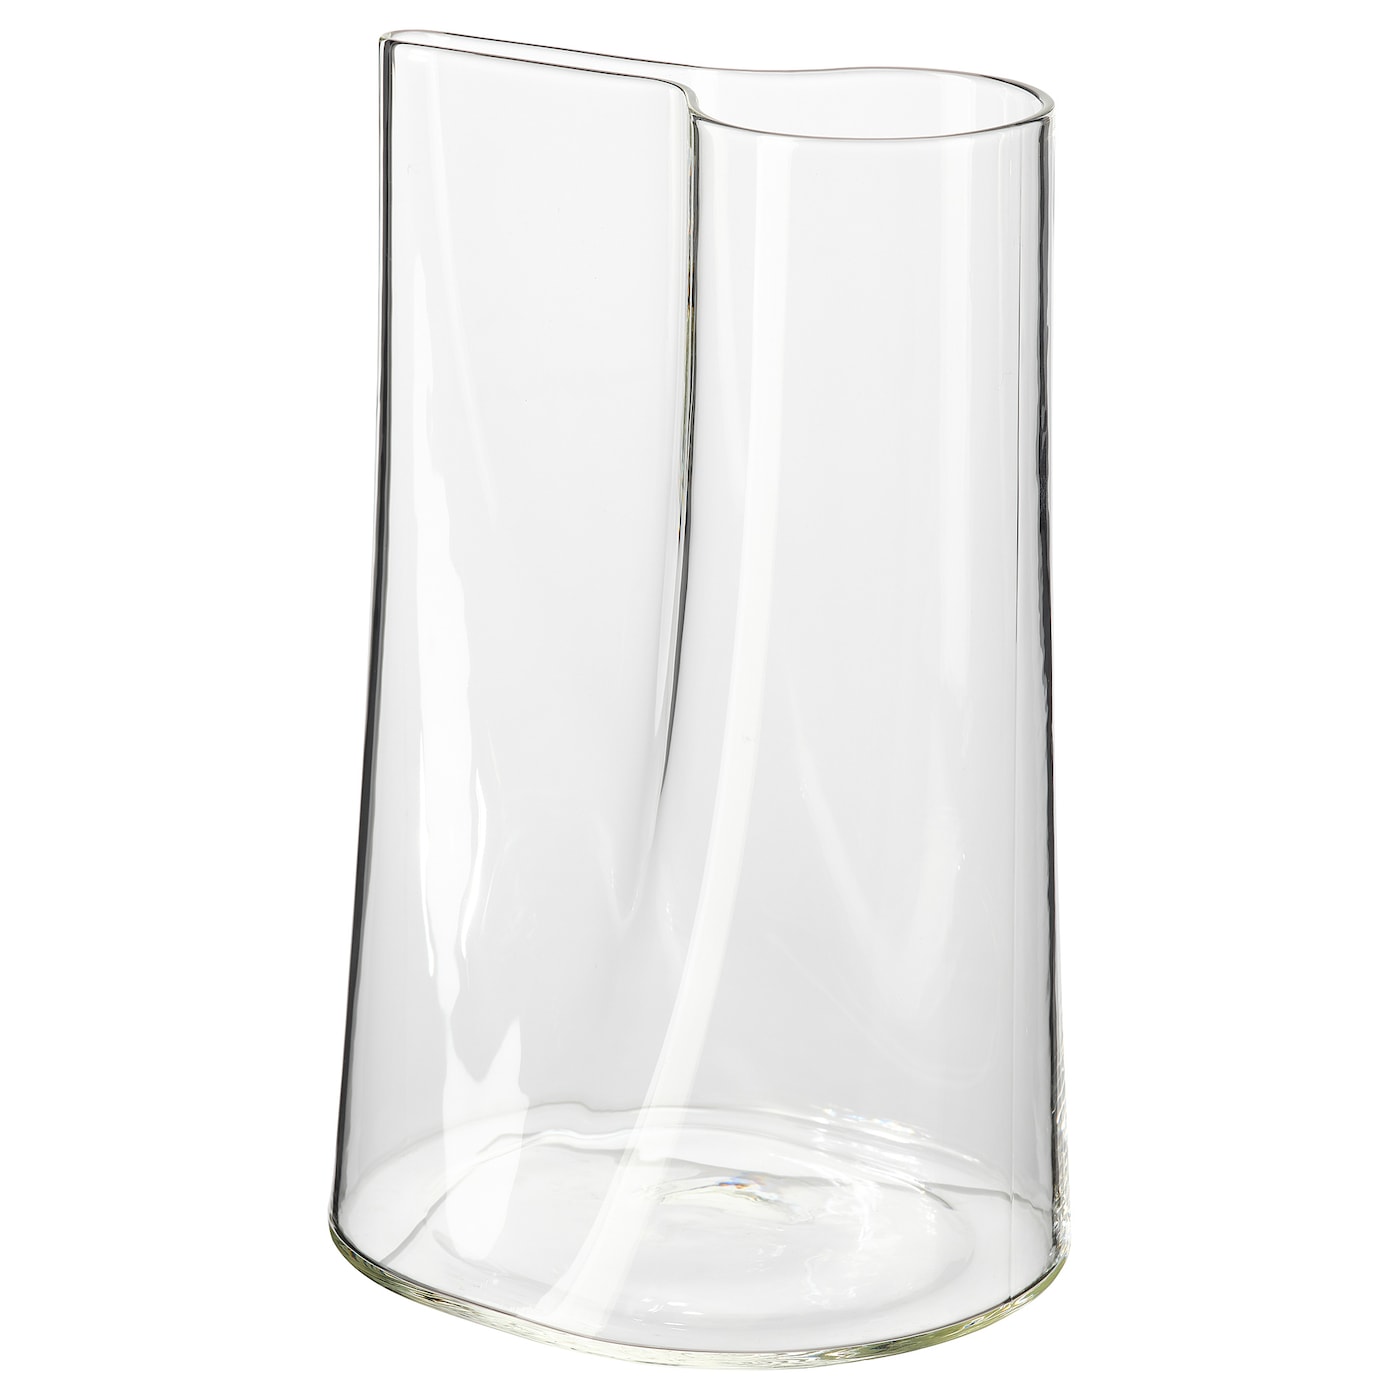 CHILIFRUKT ЧИЛИФРУКТ Ваза/лейка, прозрачное стекло, 21 см IKEA ваза для цветов с вашей гравировкой